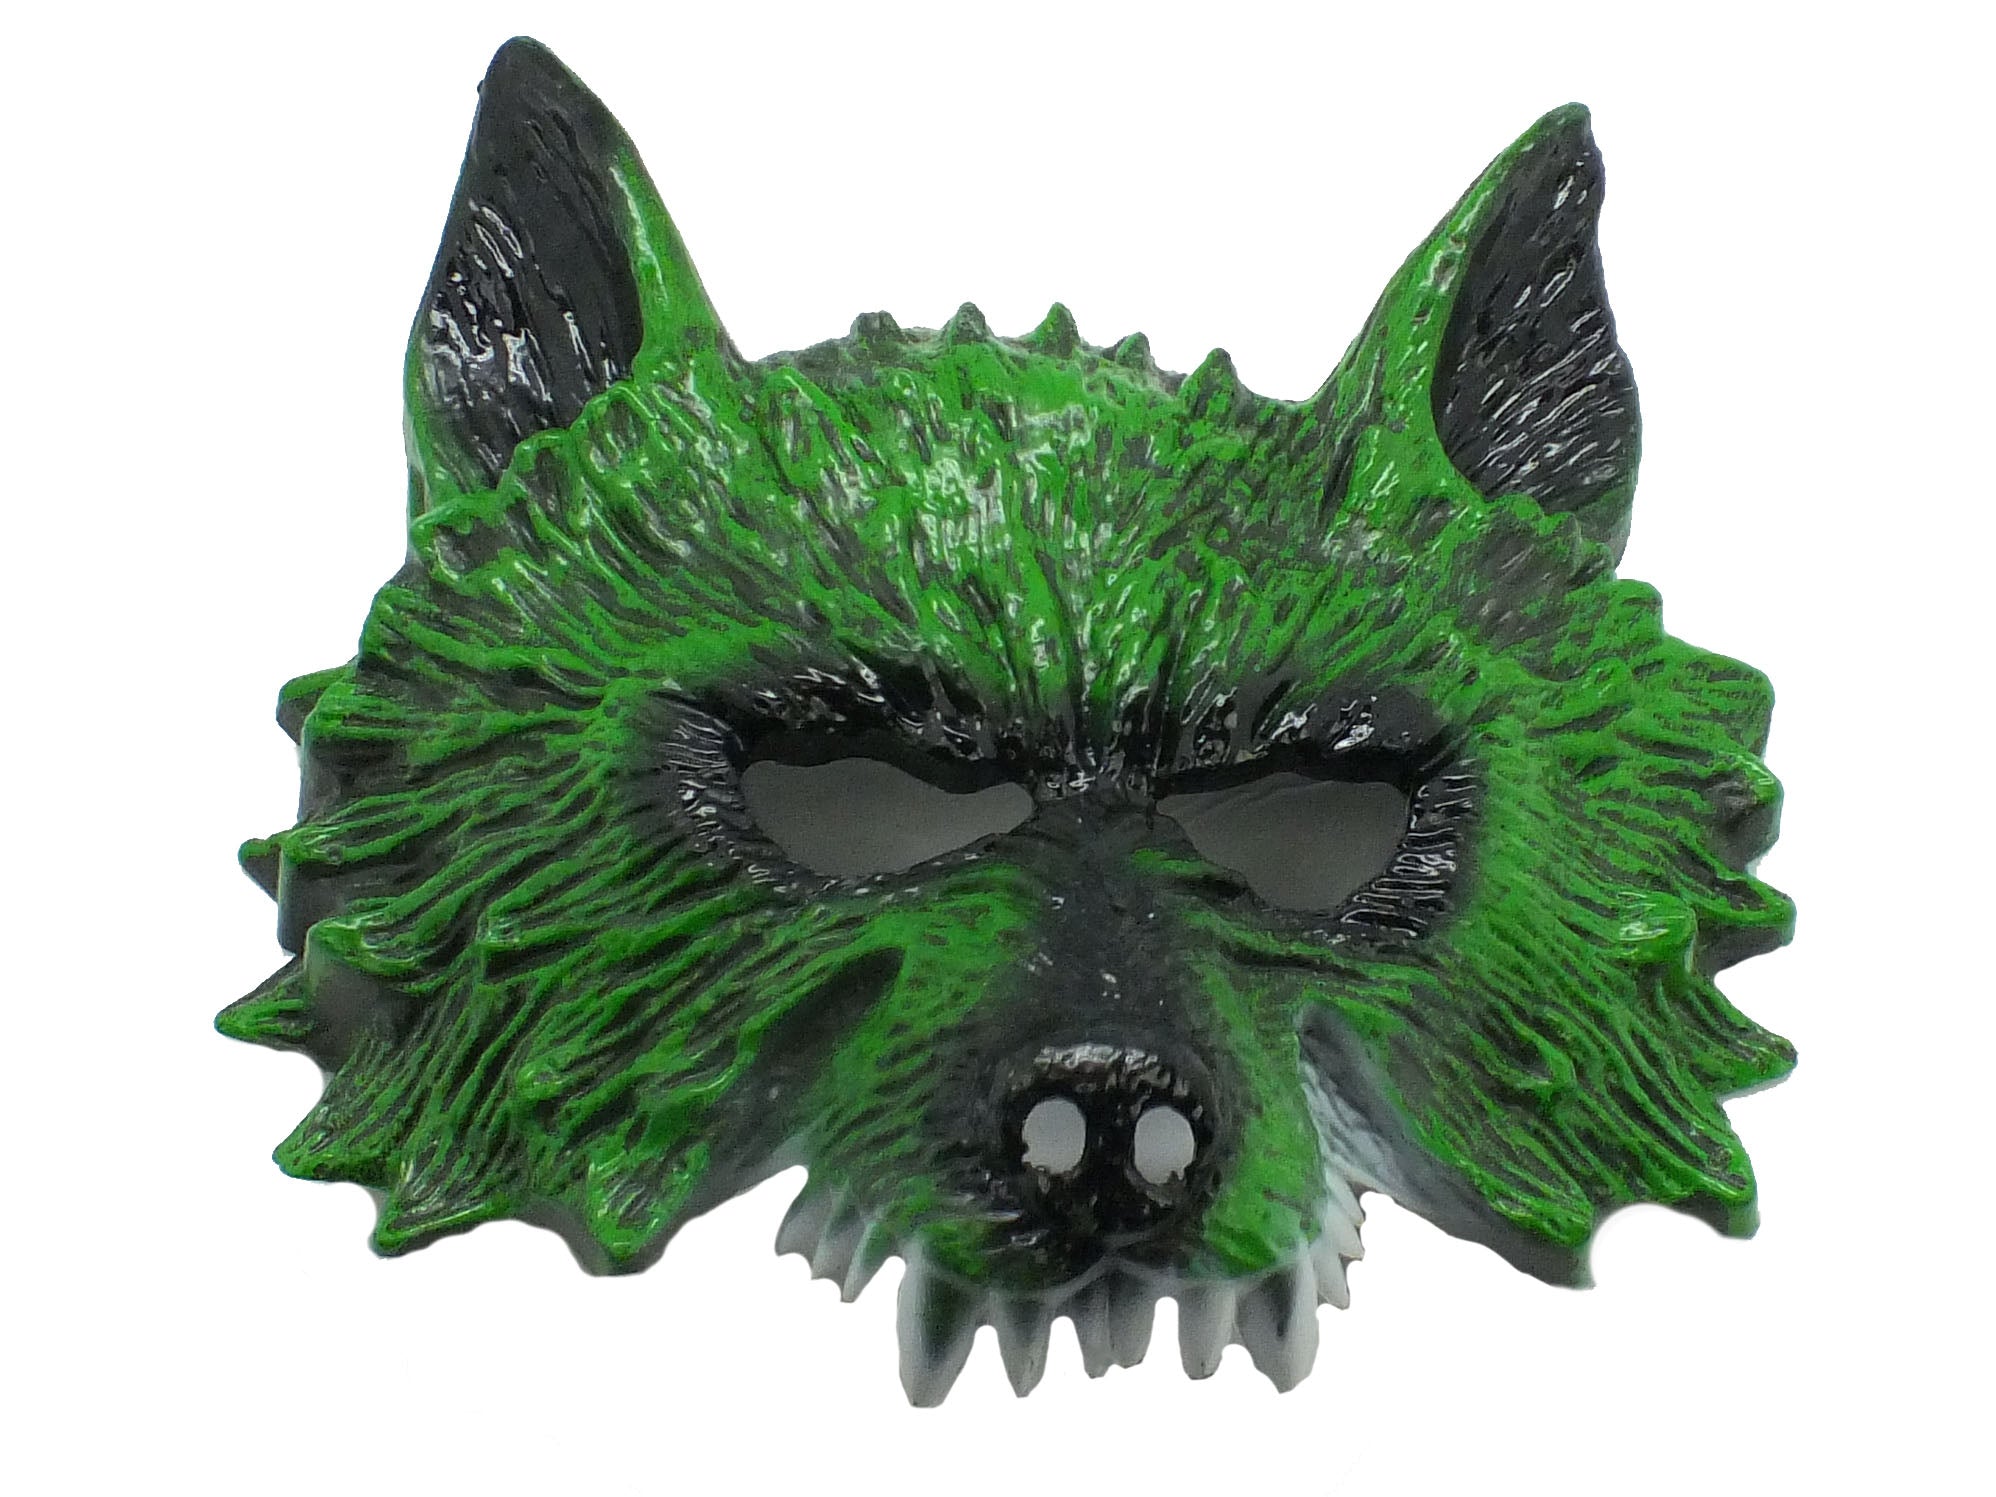 Wolf Mask